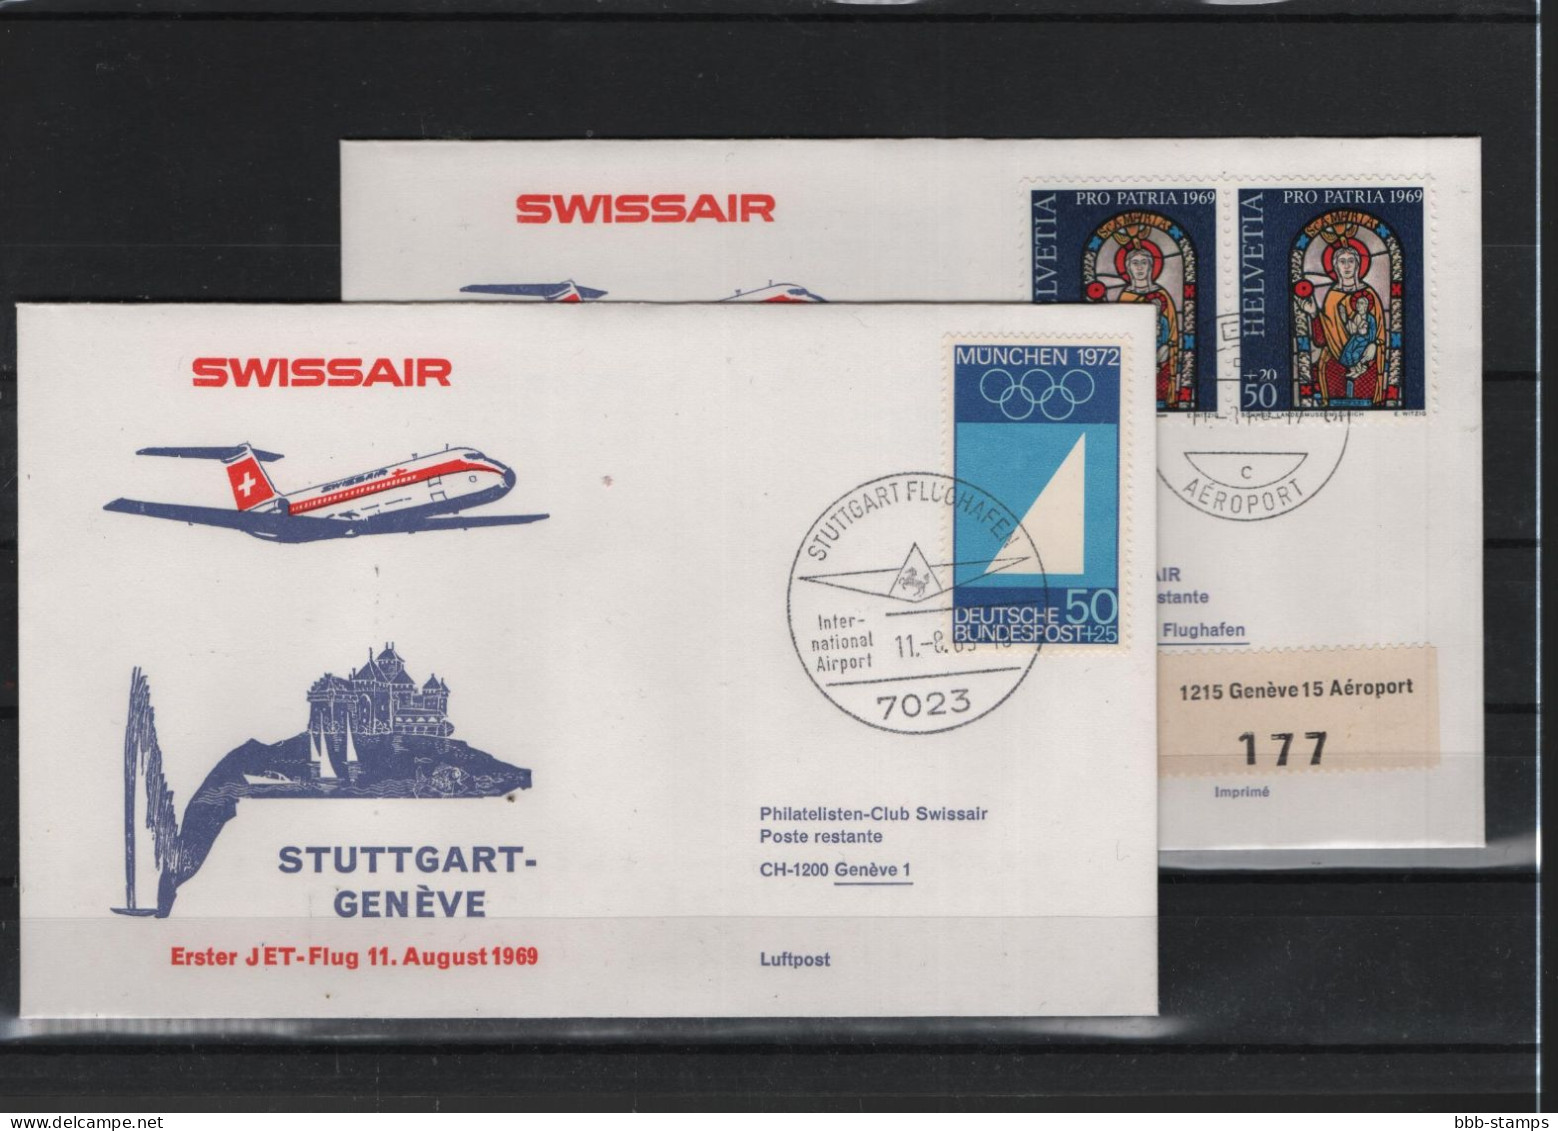 Schweiz Air Mail Swissair  FFC  11.8.1969 Genf - Stuttgart VV - Primi Voli